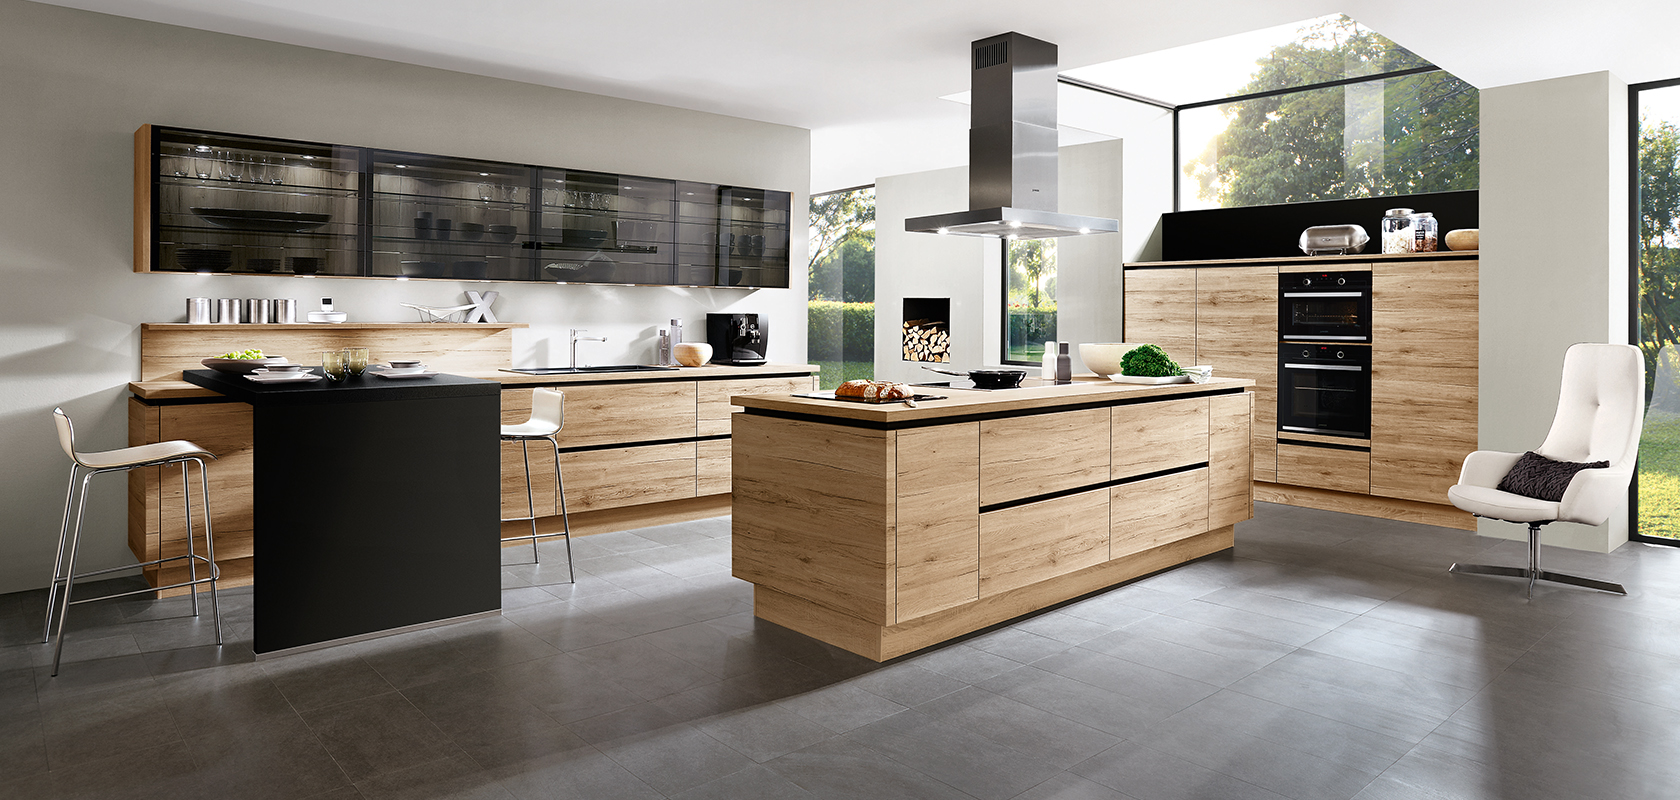 Moderne Kücheninnenarchitektur mit eleganten schwarzen Geräten, Holzschränken und einer zentralen Insel mit minimalistischer Ästhetik und reichlich natürlichem Licht.